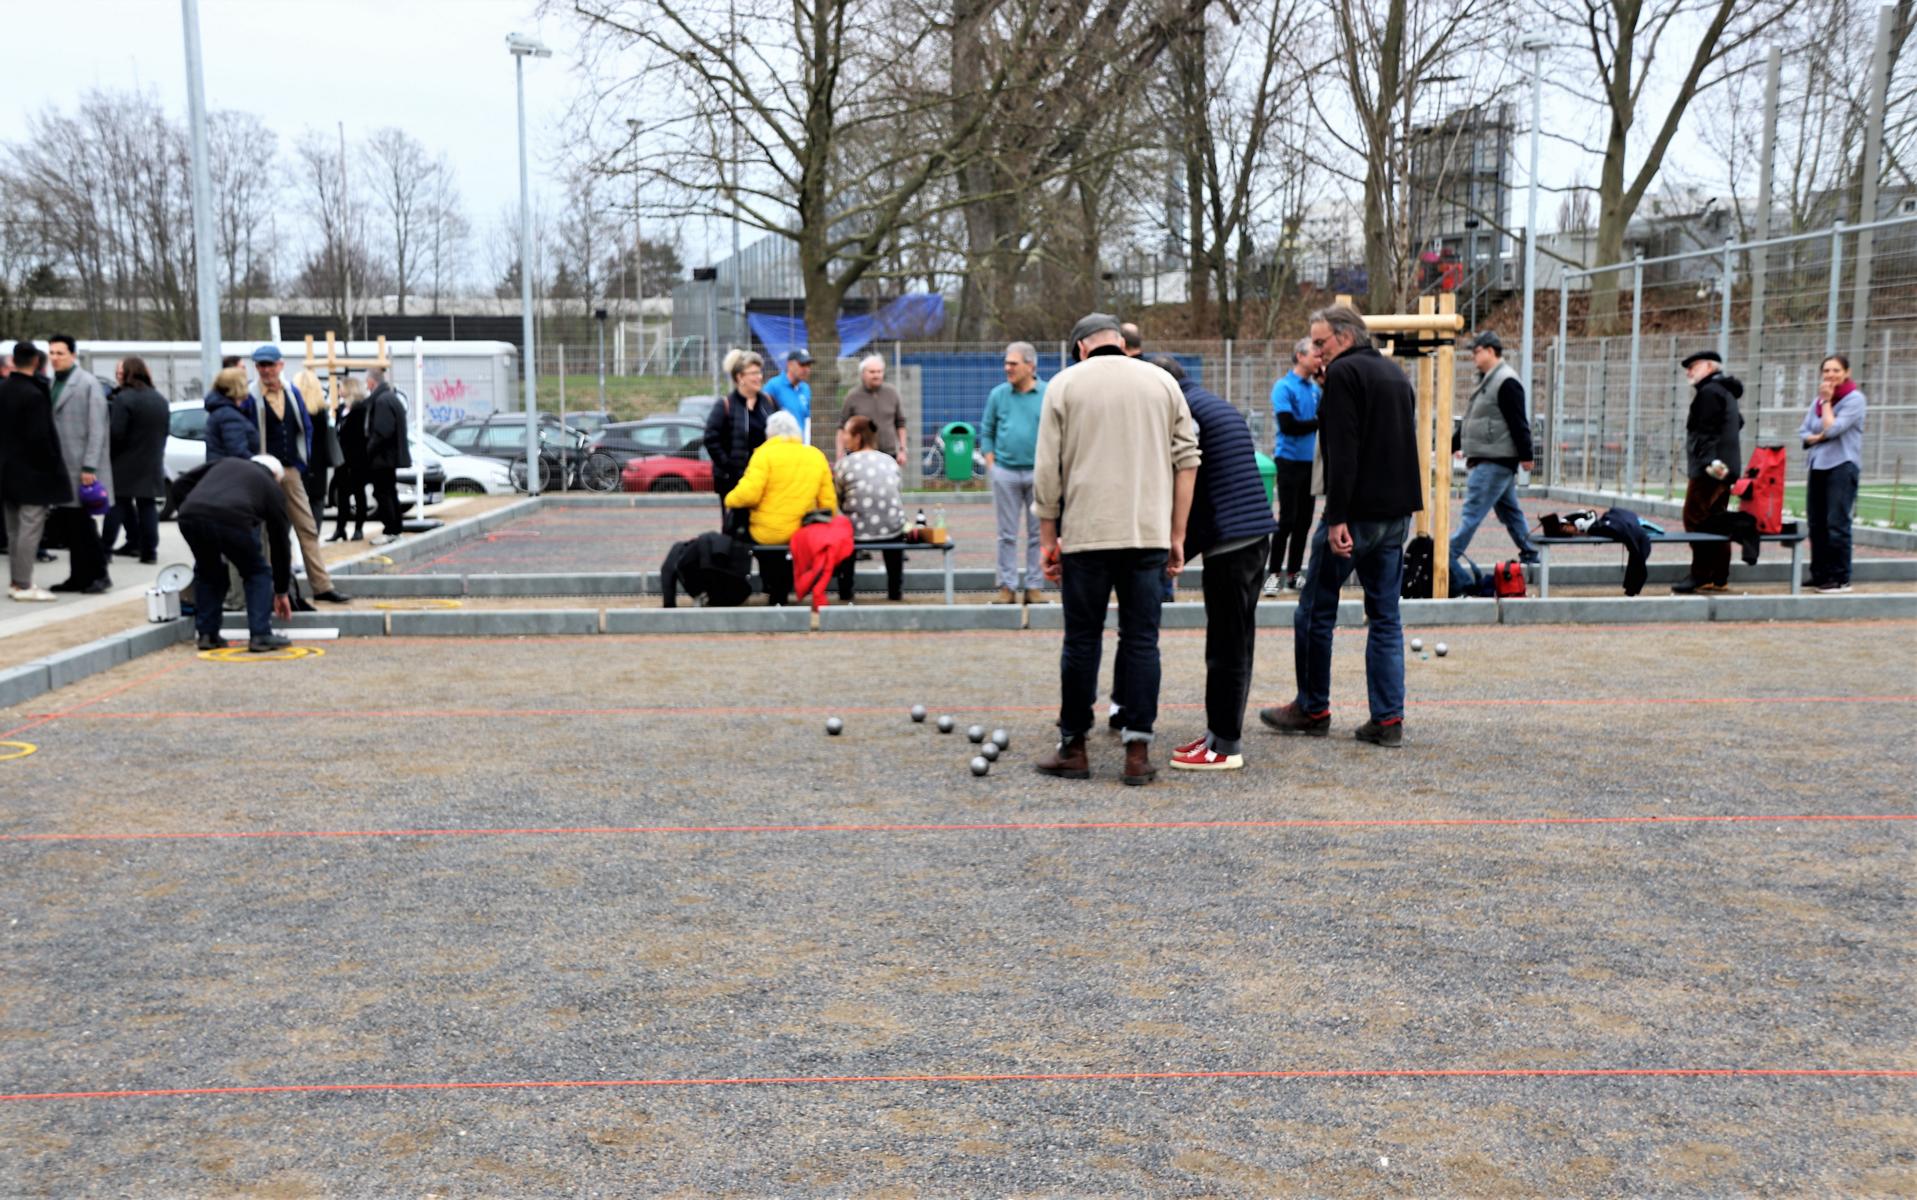  Eroeffnung des Boule Platzes der  Bornheim Boules am FSV-Stadion. FOTOS: < >< > 2023-03-17 Eroeffnung Bouleplatz der Bornheim Bloules am FSV Stadion< >